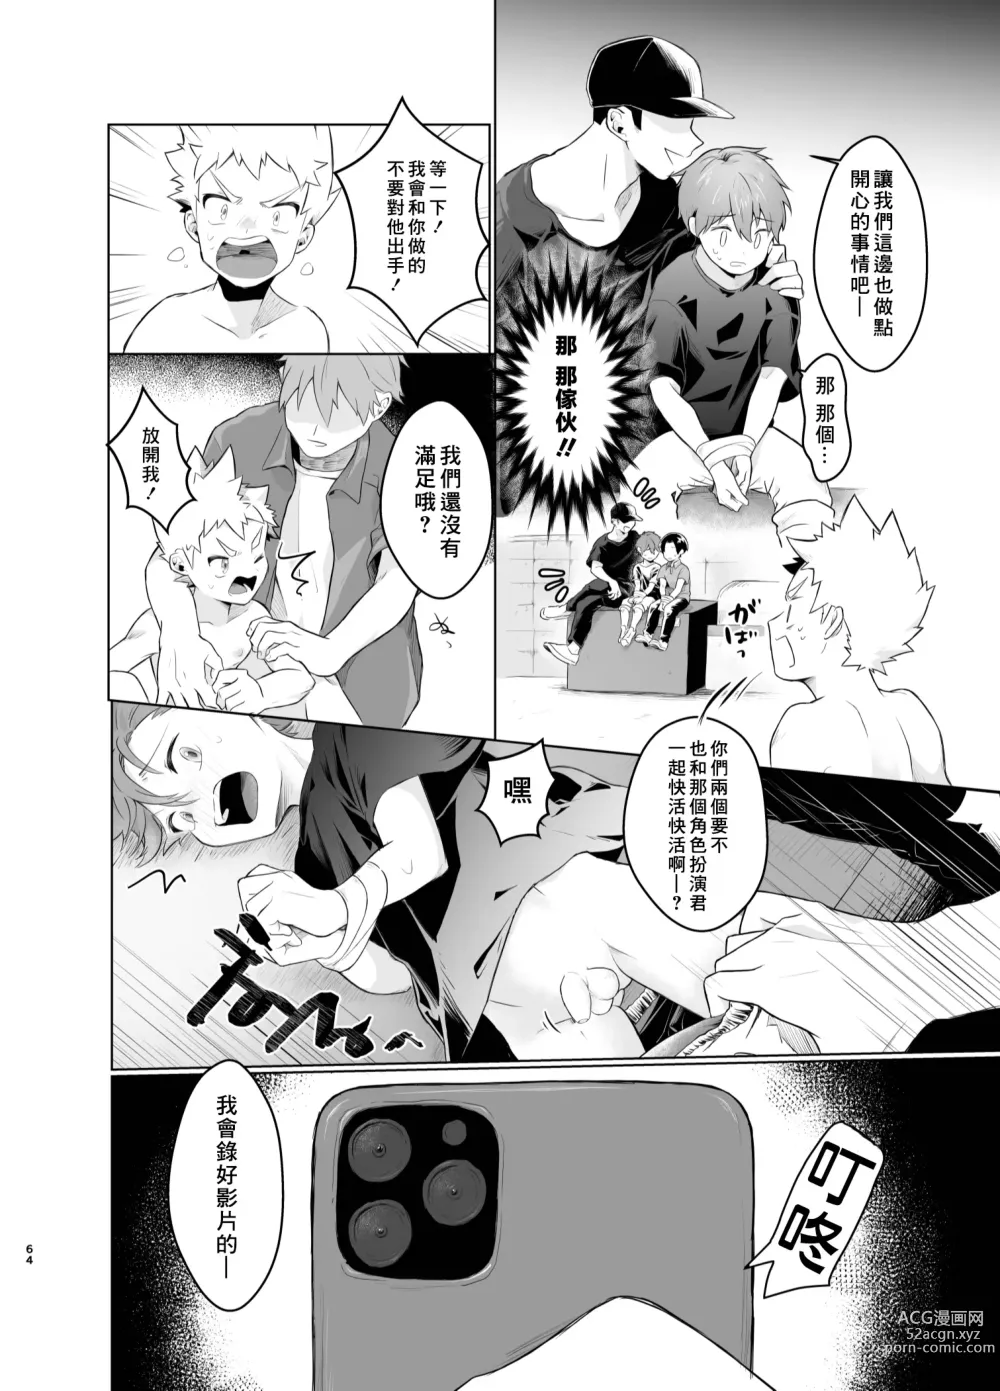 Page 63 of doujinshi Mahou Shoujo Mirakuru Mirachan丨魔法少女奇蹟米拉醬 (decensored)